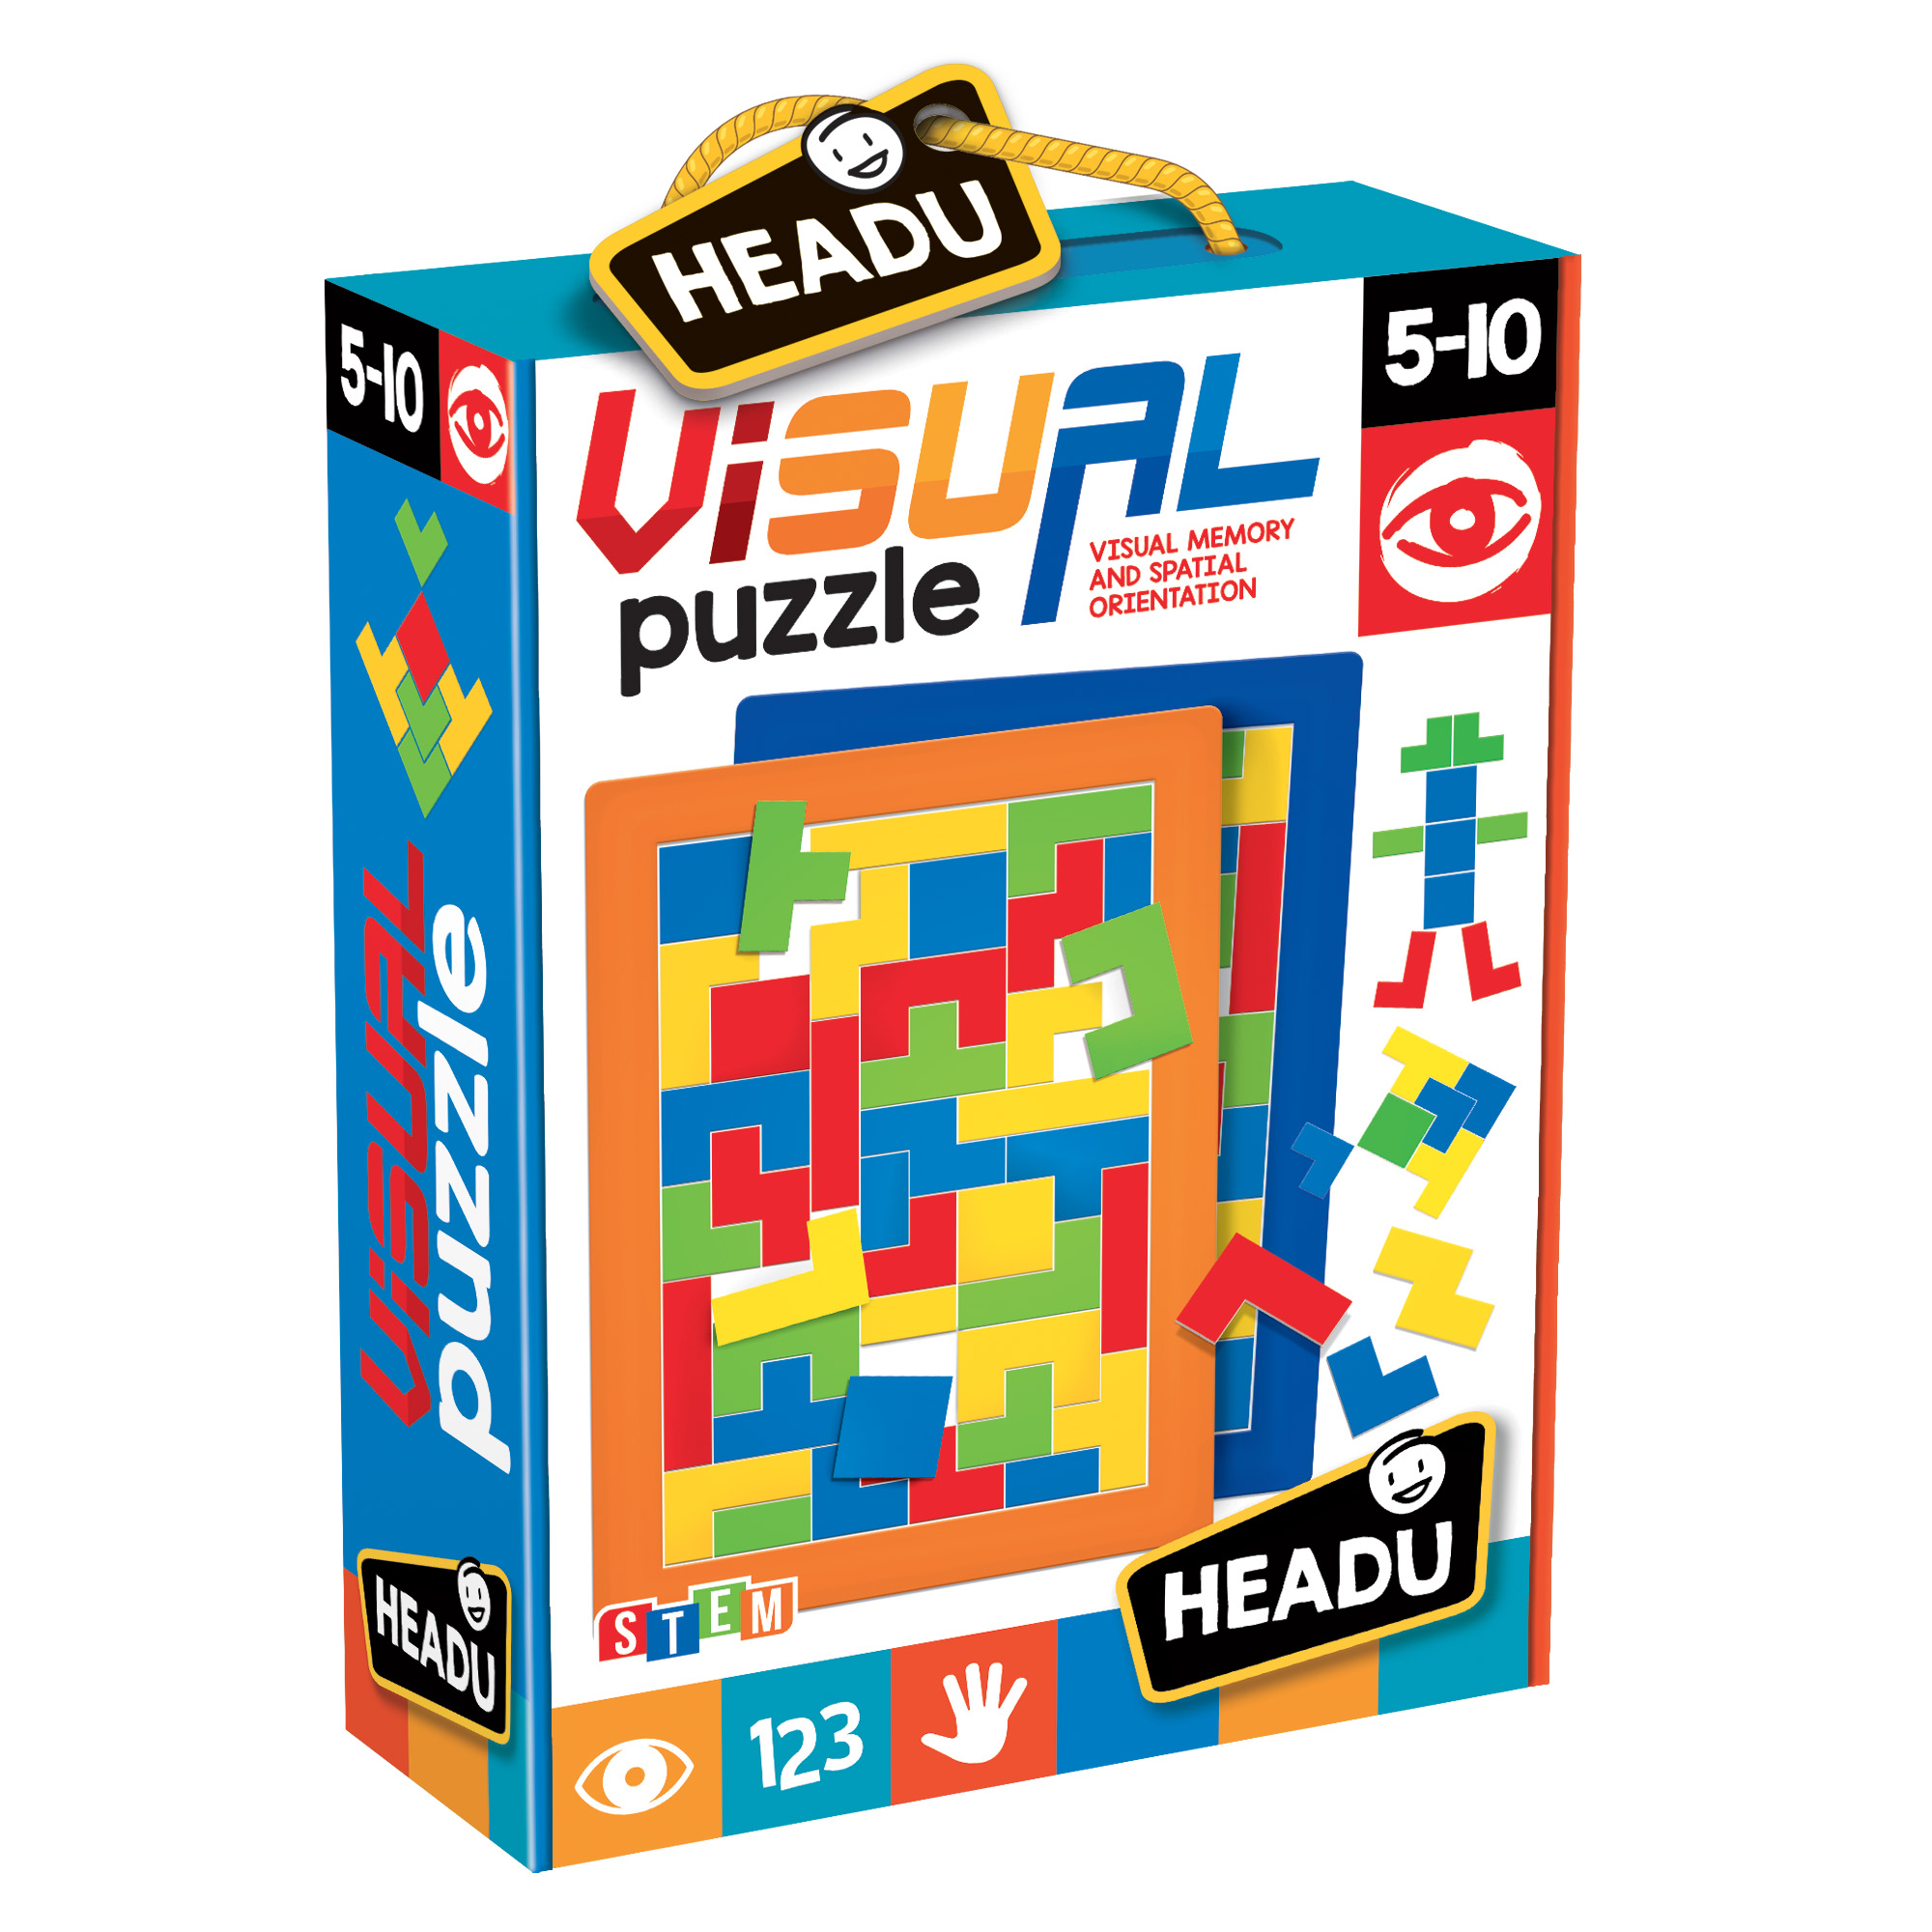 Vizuální puzzle